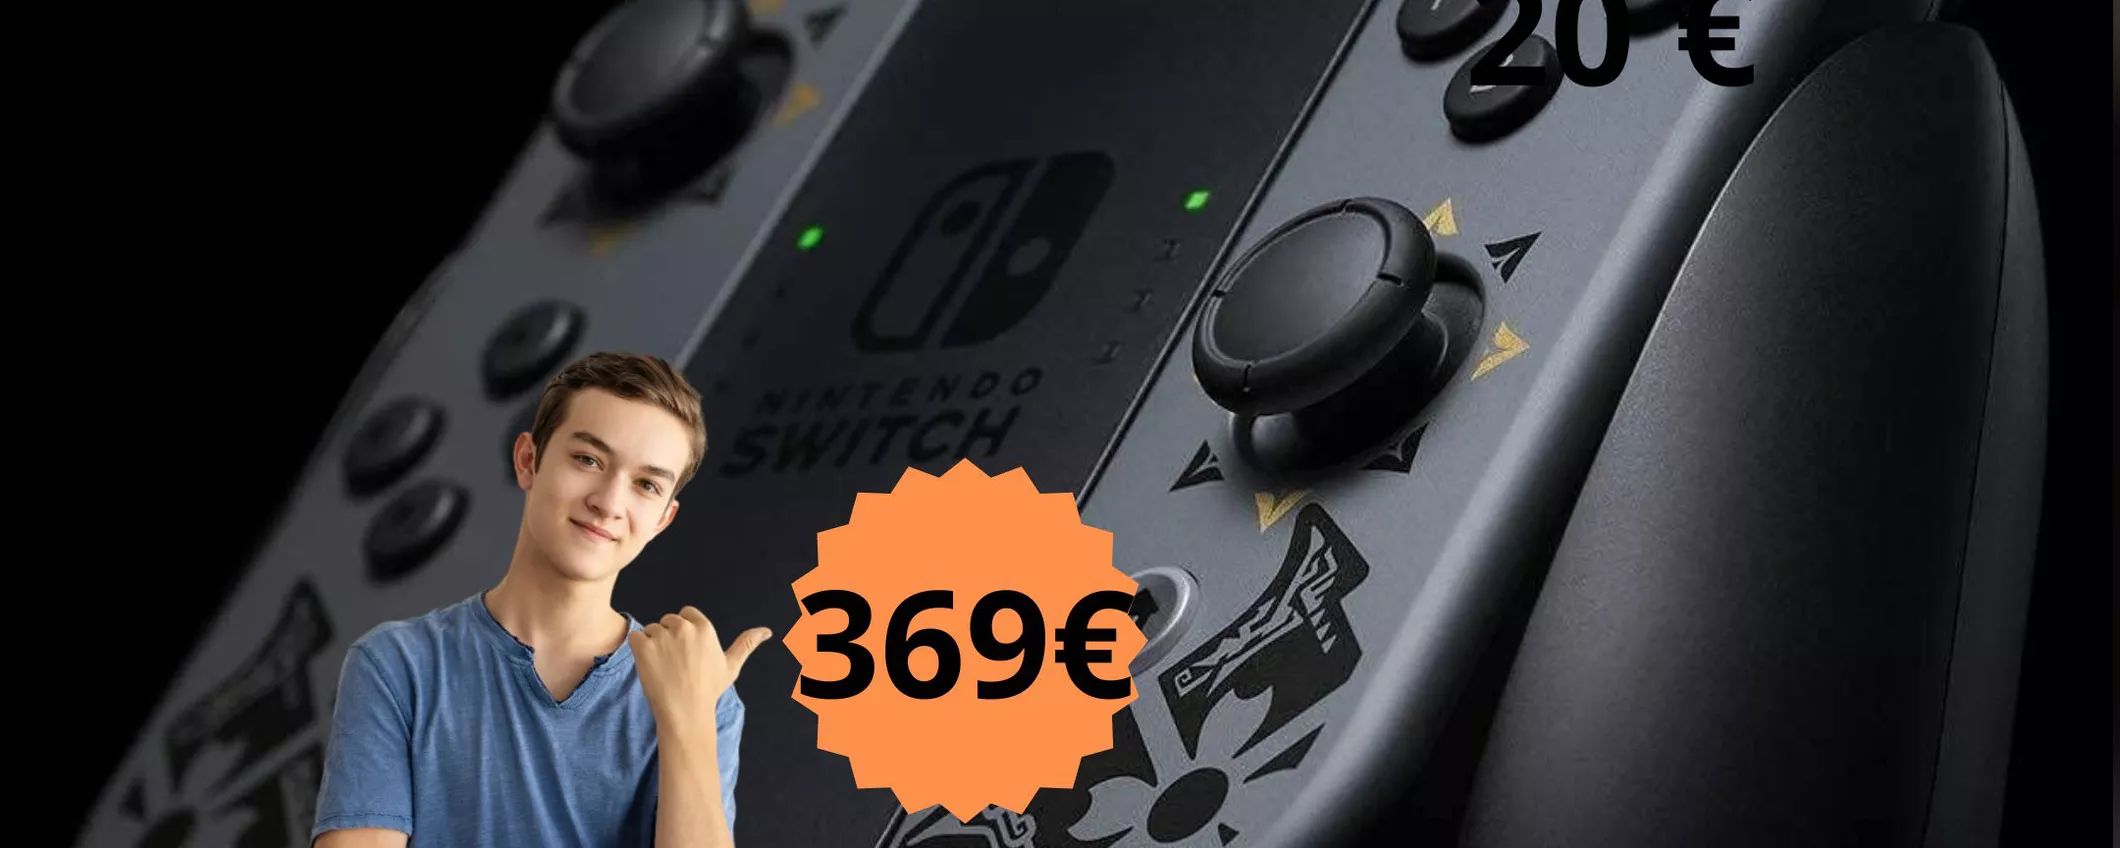 Nintendo Switch Edizione Speciale Monster Hunter Rise è ora in OFFERTA! Risparmi 30 euro